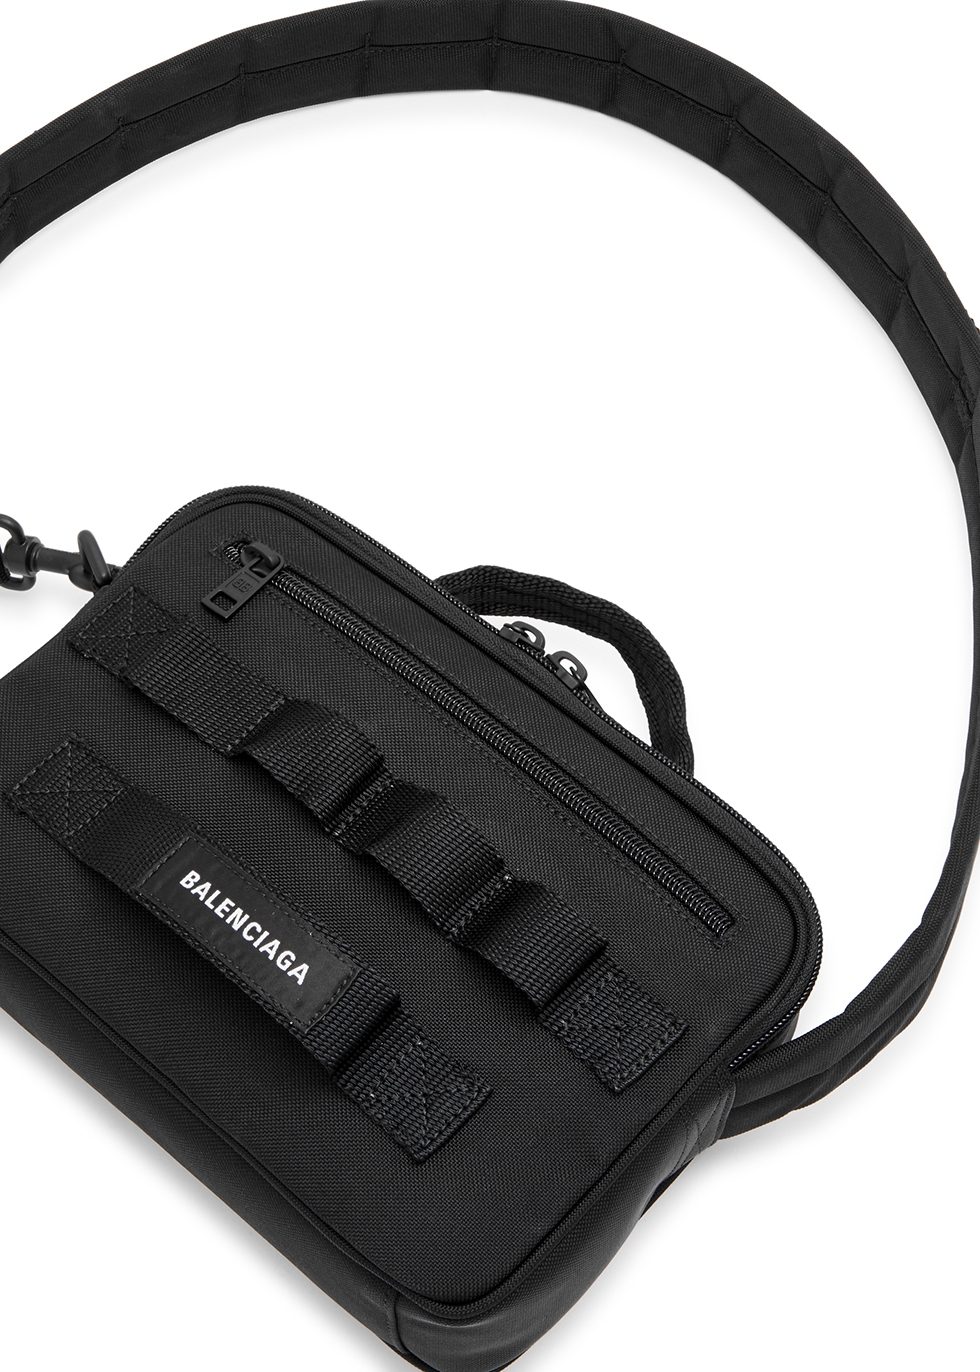 Army belt bag Balenciaga  IetpShops Australia  Predowned shoulder bag  19 Small 